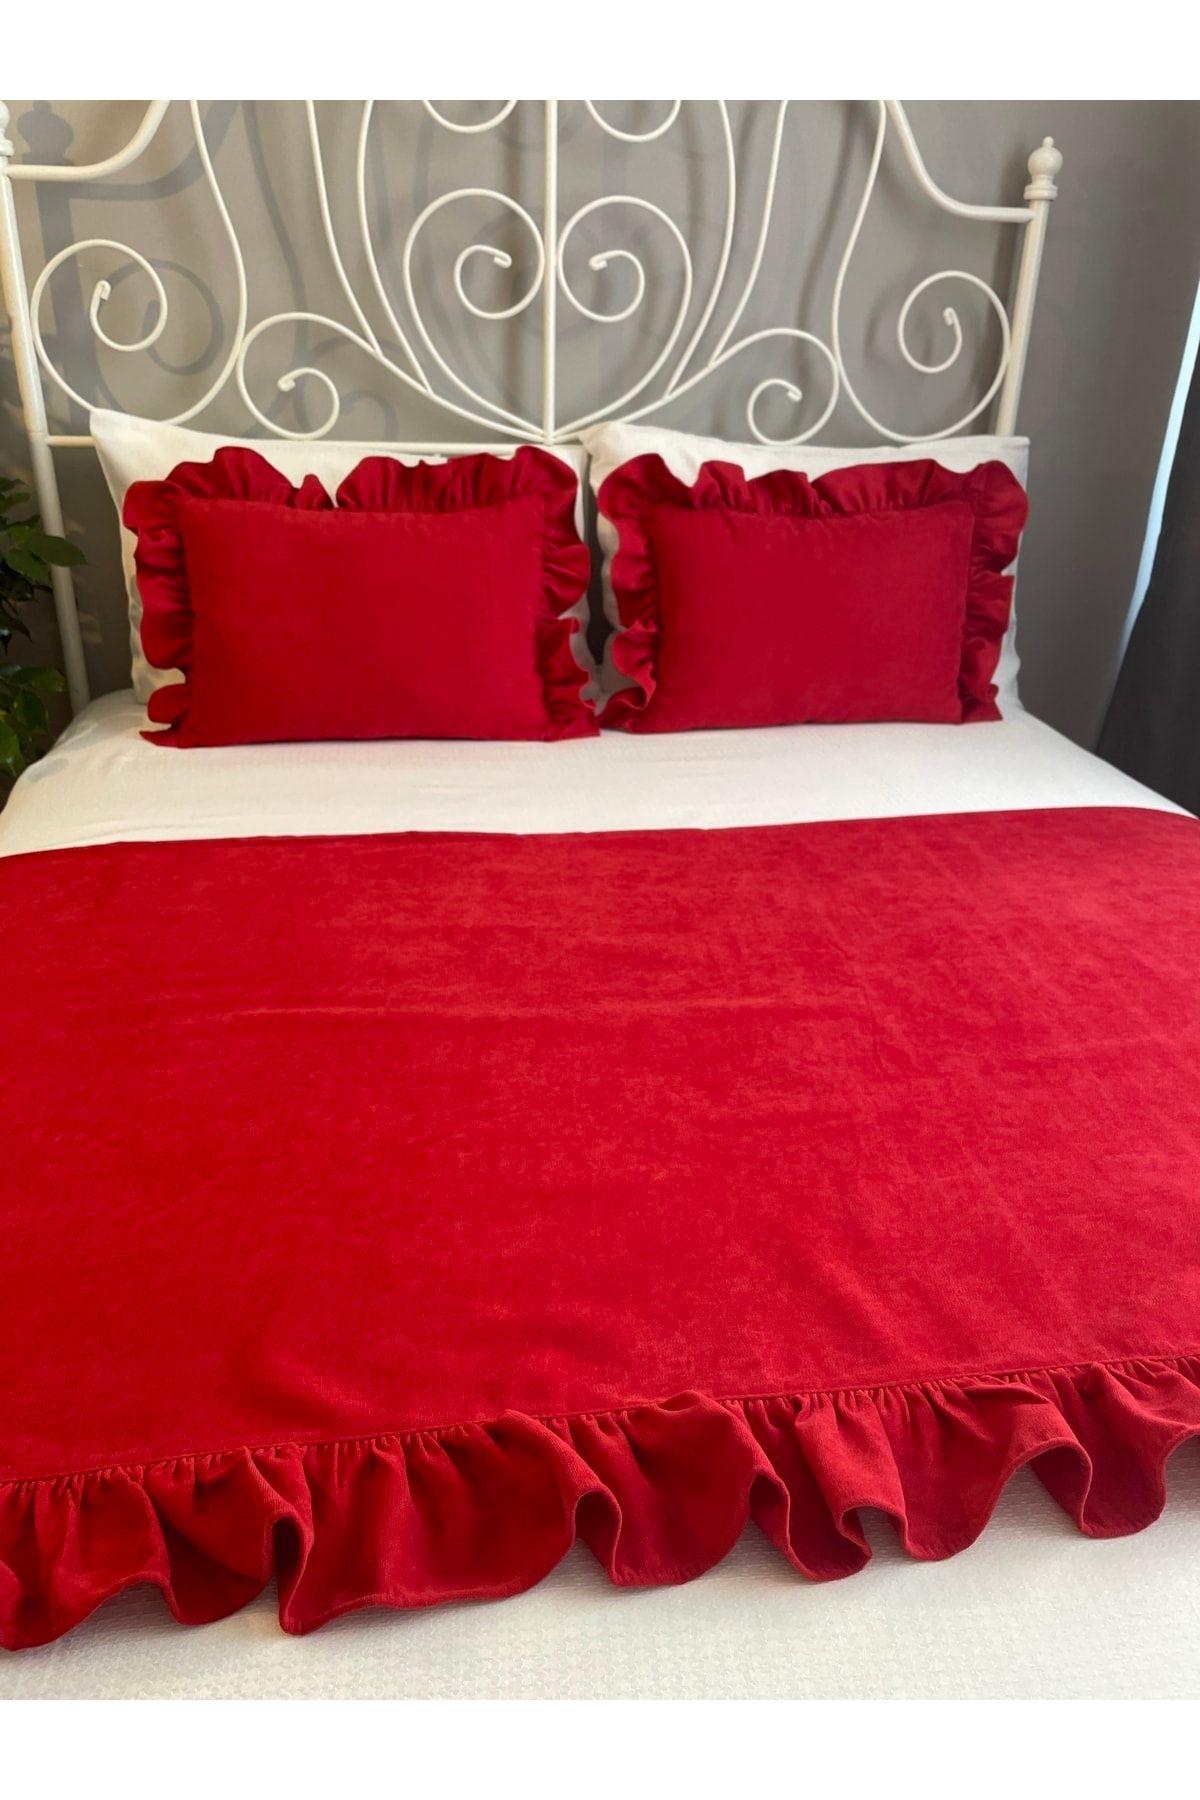 Decamor home Kırmızı Fırfırlı Yatak Runner 2 Li Kırlent Seti Yatak Şalı Yatak Örtüsü Set Çift Kişilik